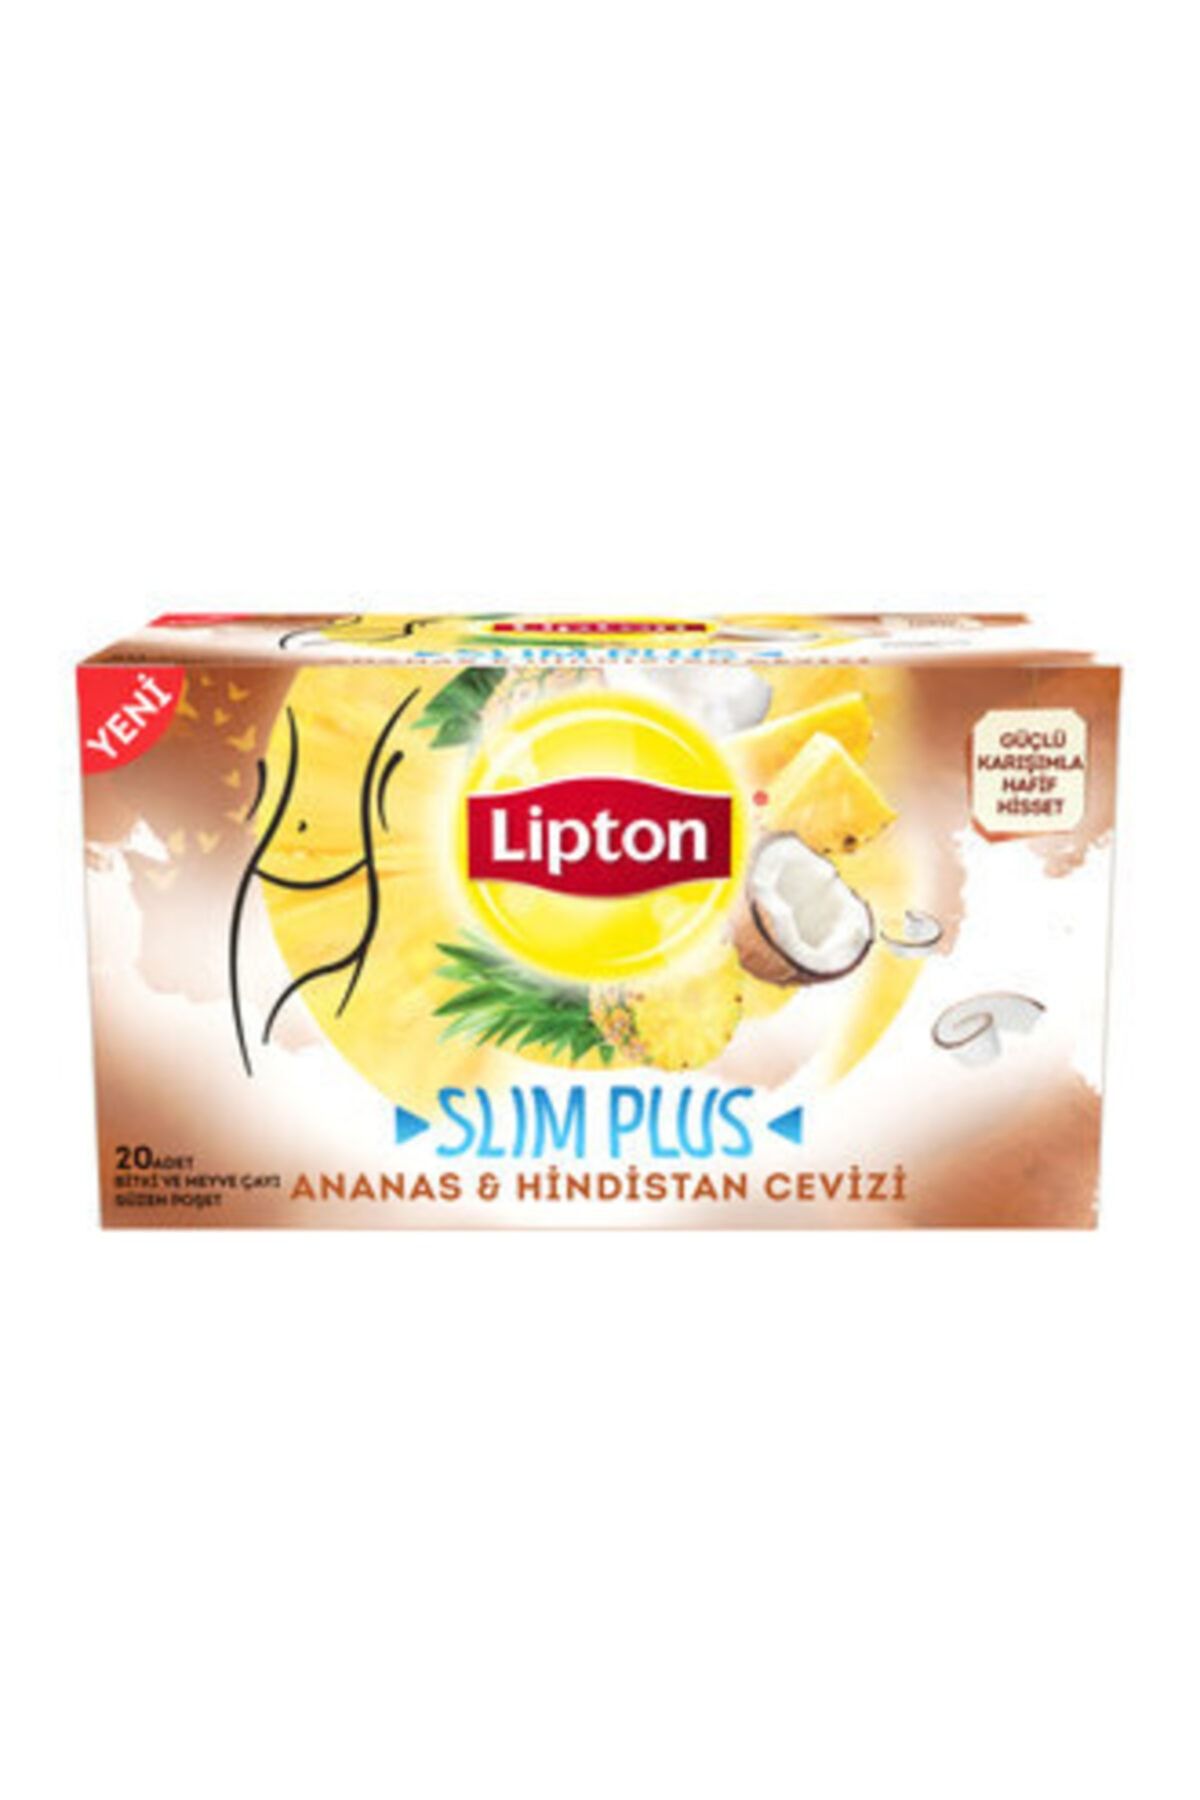 Lipton Slim Plus Ananas & Hindistan Cevizi 20'li Bardak Poşet 34 Gr